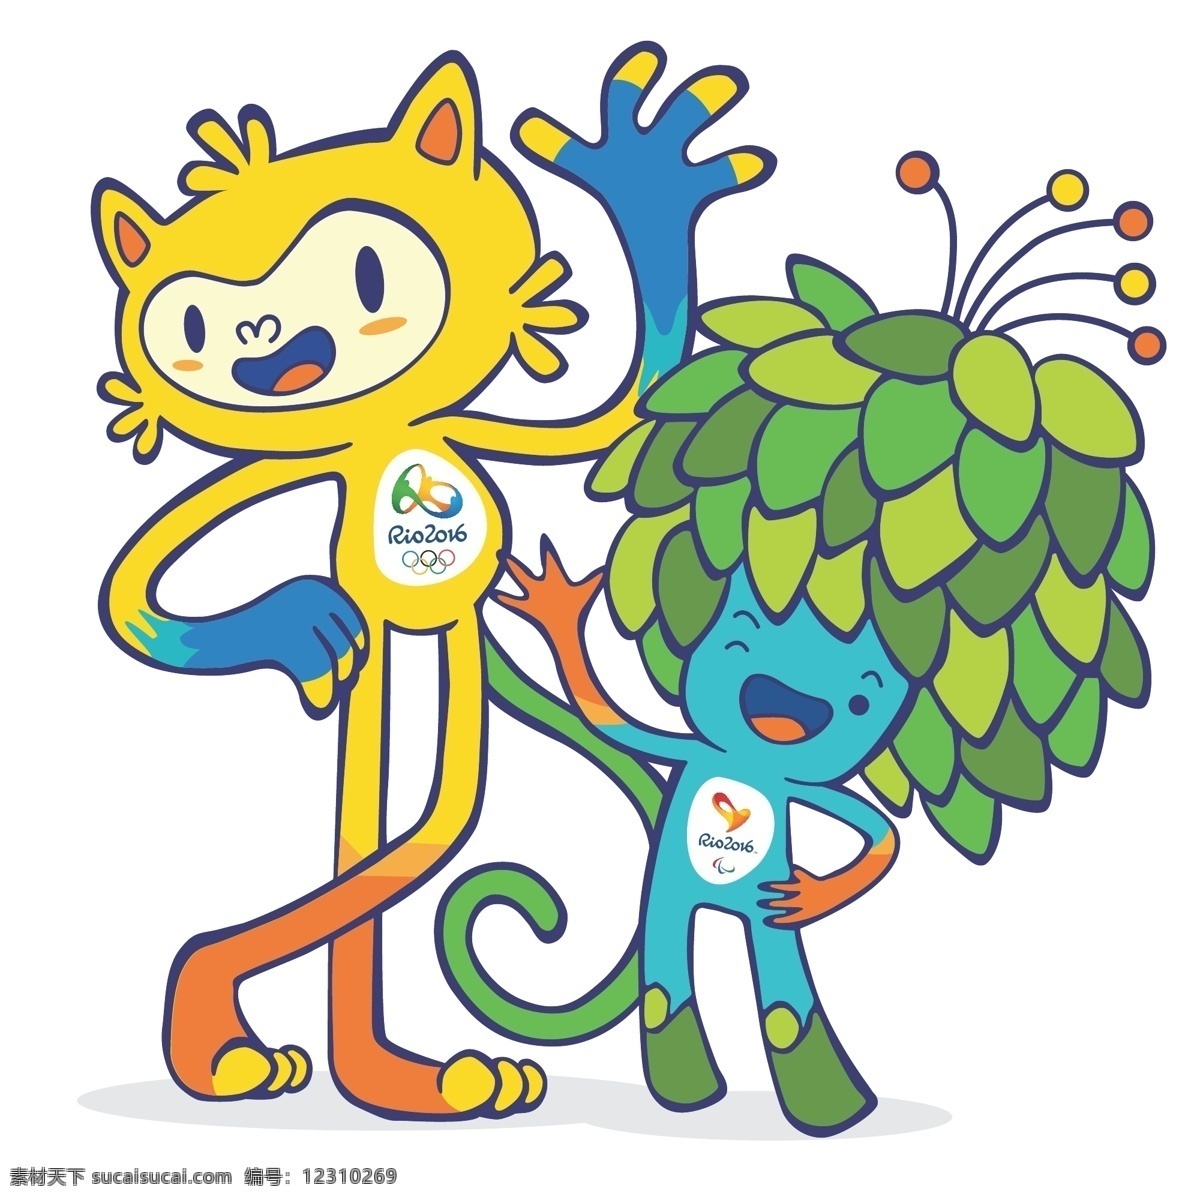 里约 奥运会 吉祥物 里约奥运会 里约吉祥物 巴西吉祥物 维尼修斯 汤姆 2016 标志图标 公共标识标志